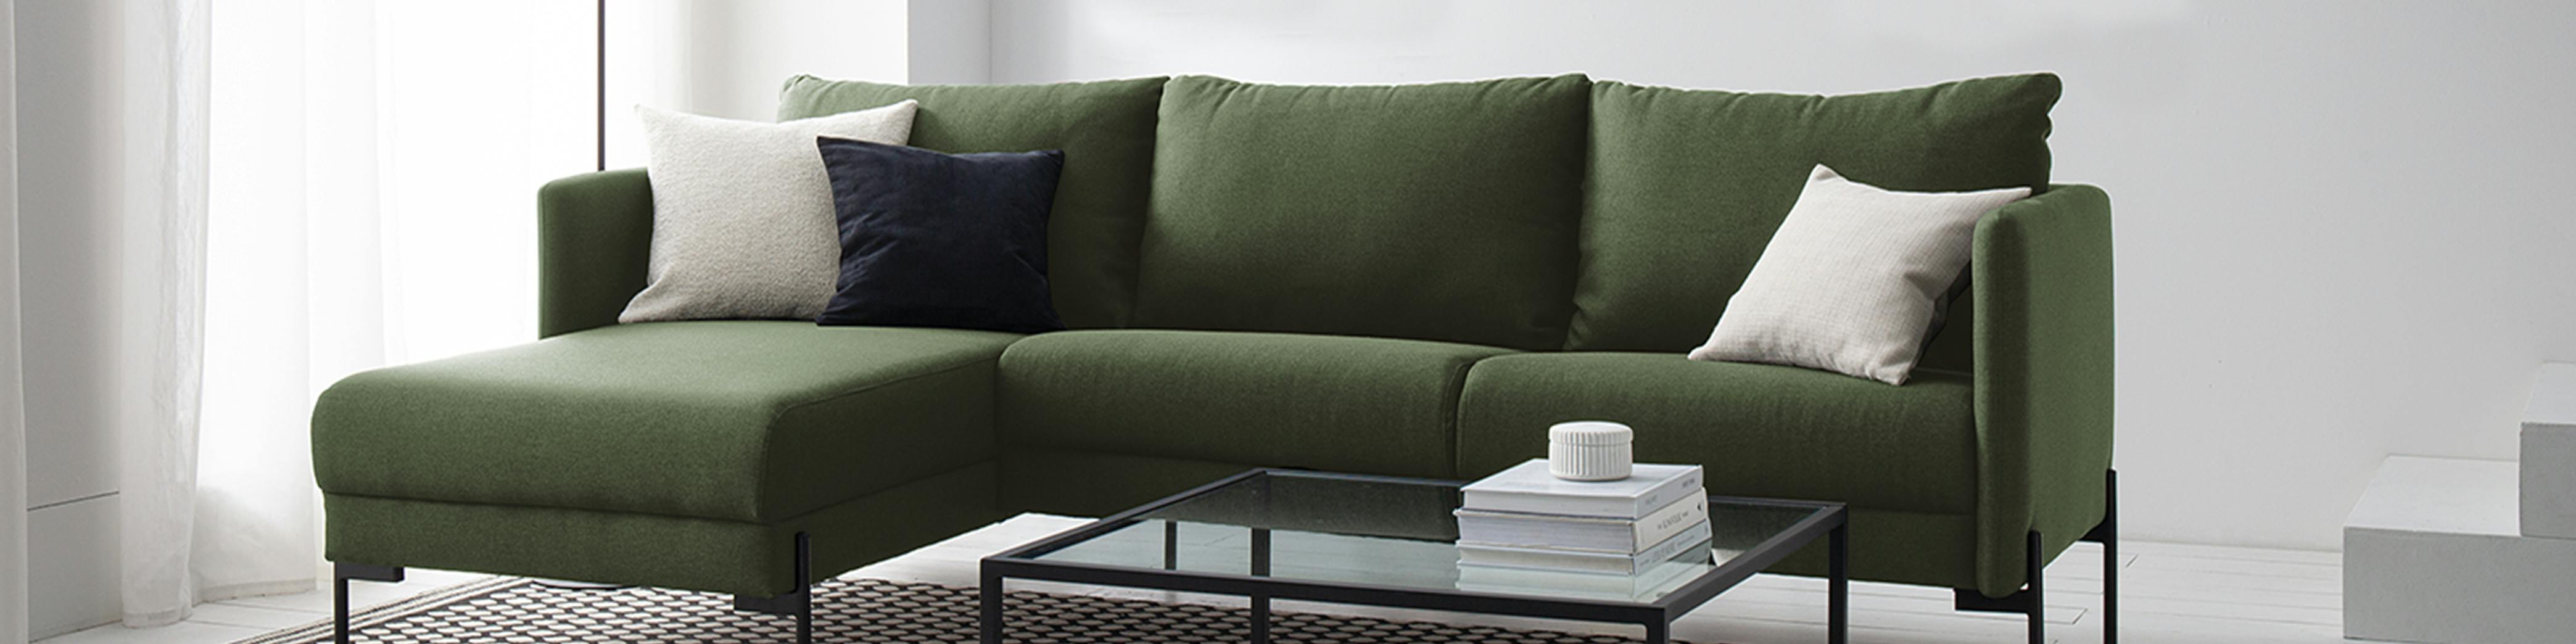 Welches Material ist besser fürs Sofa?